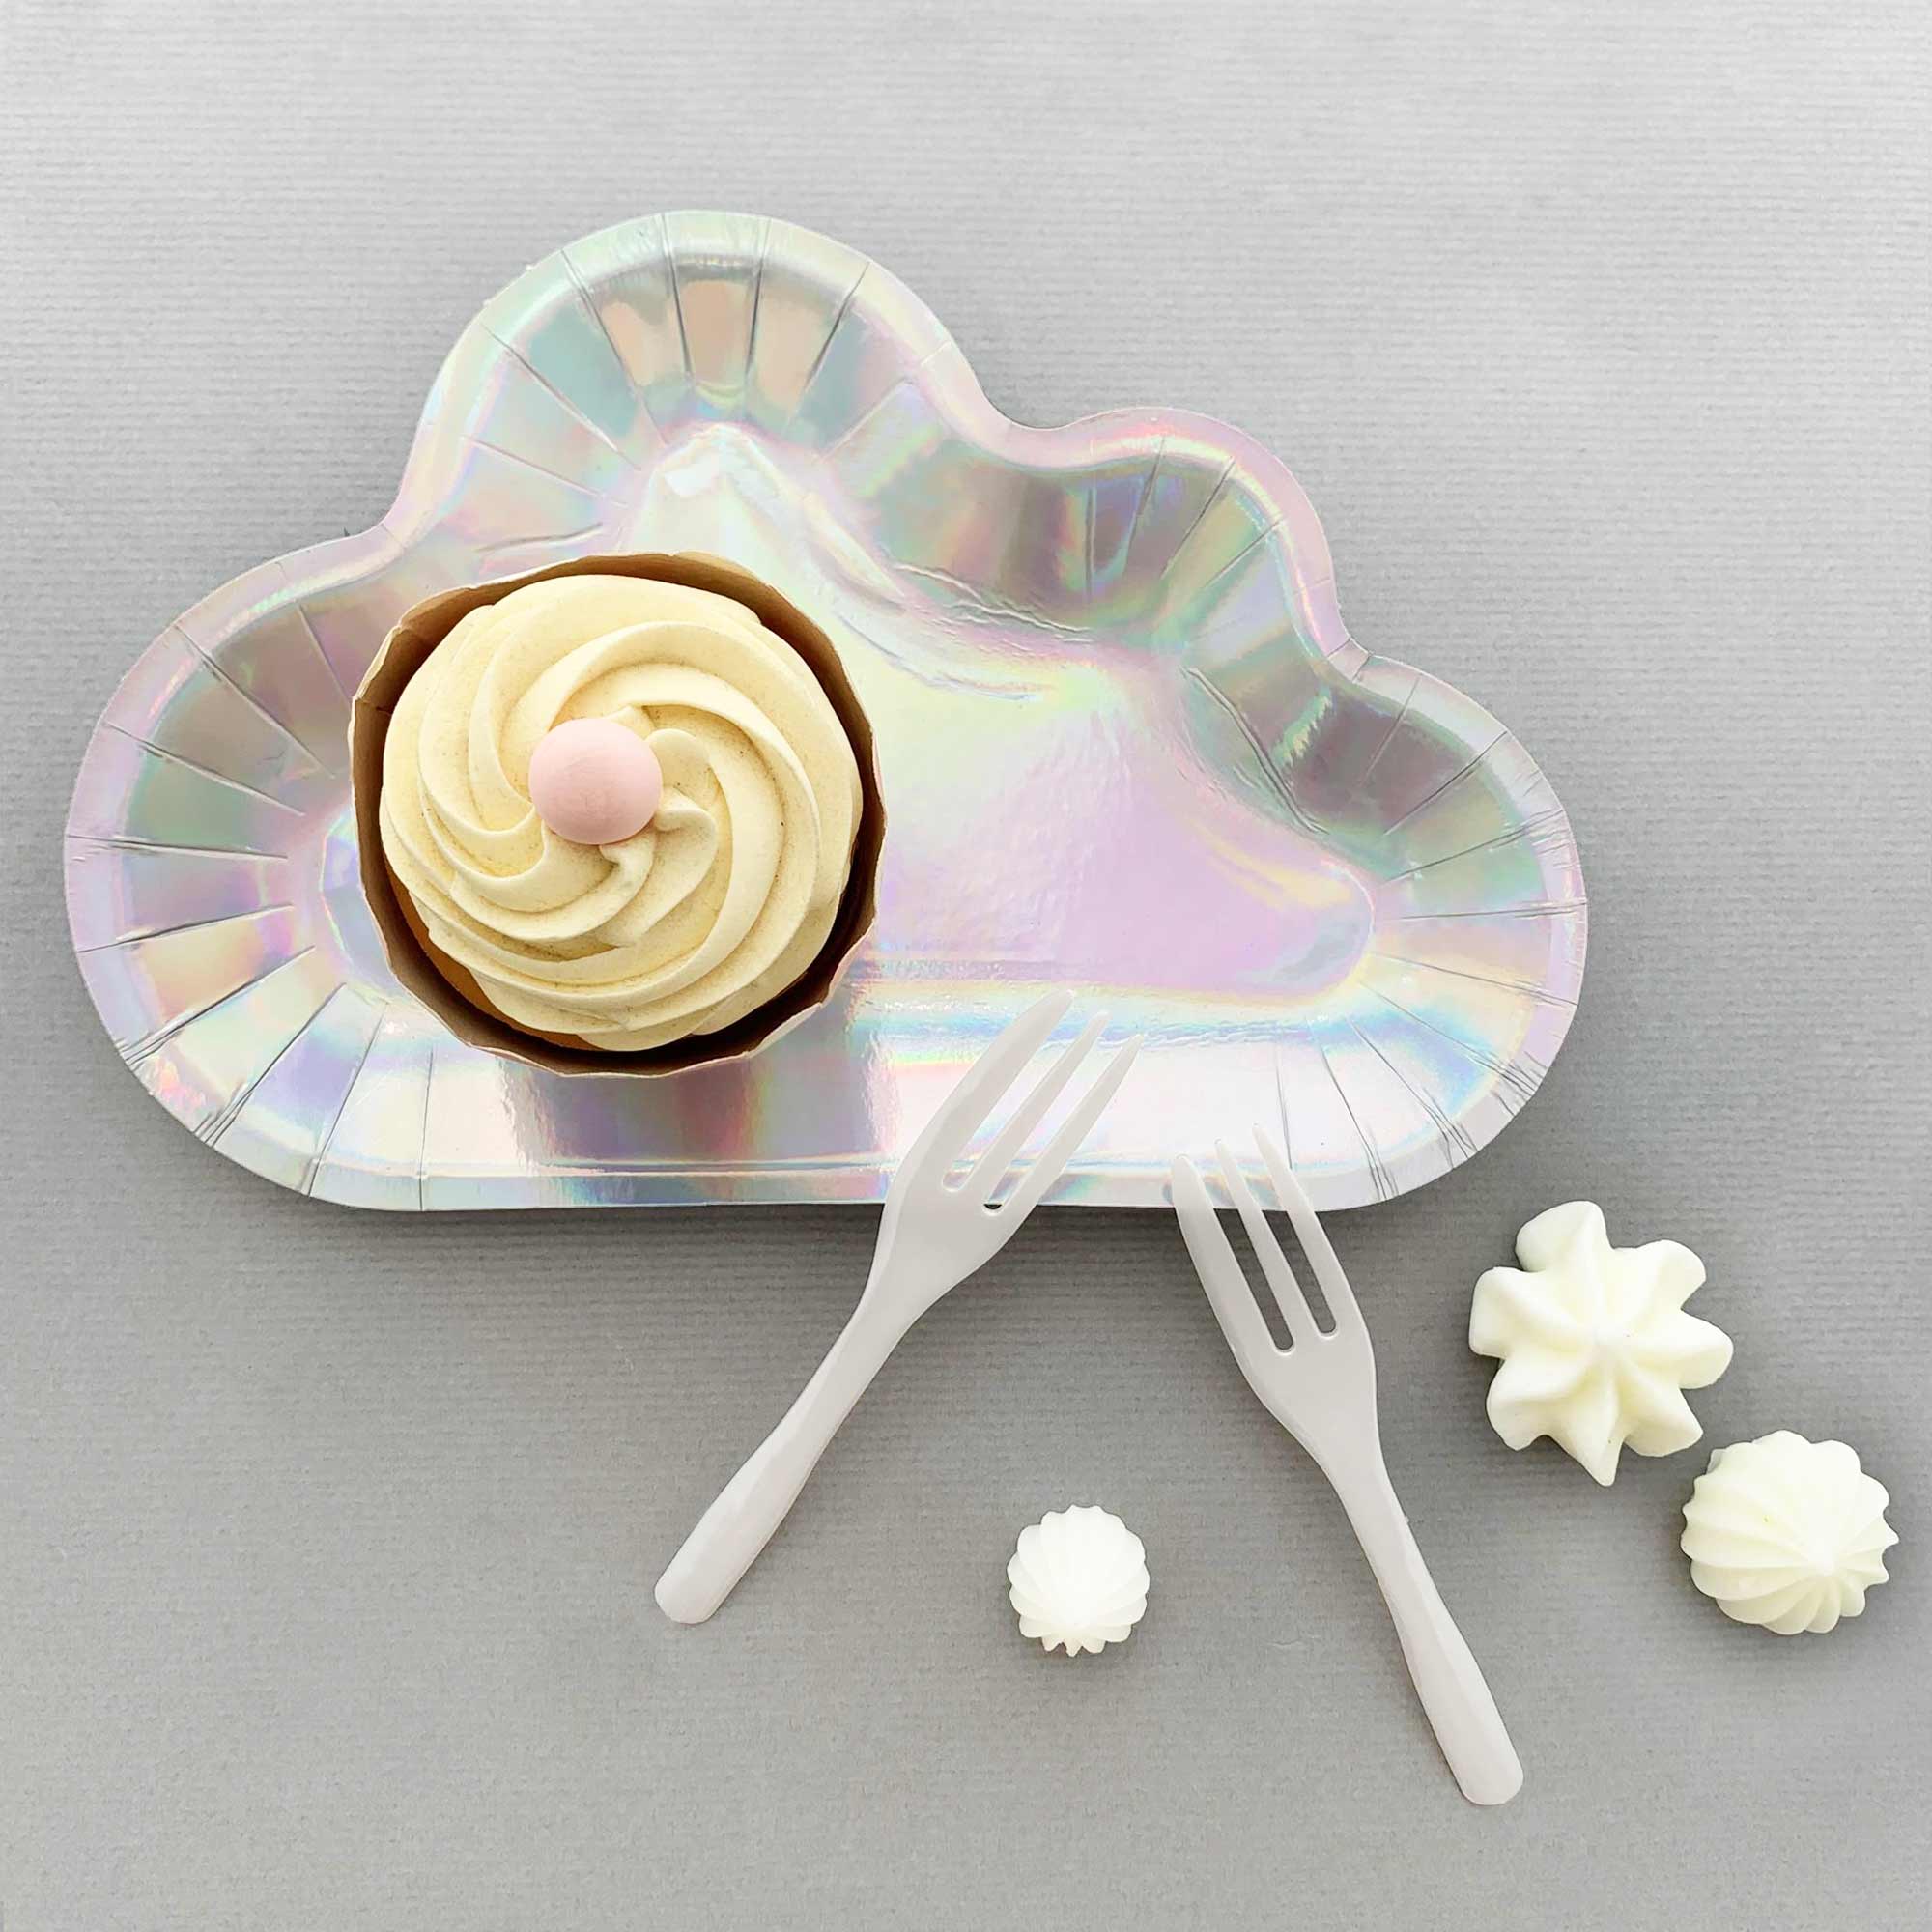 Bộ dĩa và nĩa hình đám mây lấp lánh hoàn hảo cho buổi tiệc sinh nhật chủ đề bầu trời. Làm sáng bàn ăn của bạn với dĩa hình đám mây lấp lánh và thêm một chút ánh sáng cho buổi kỷ niệm của bạn!